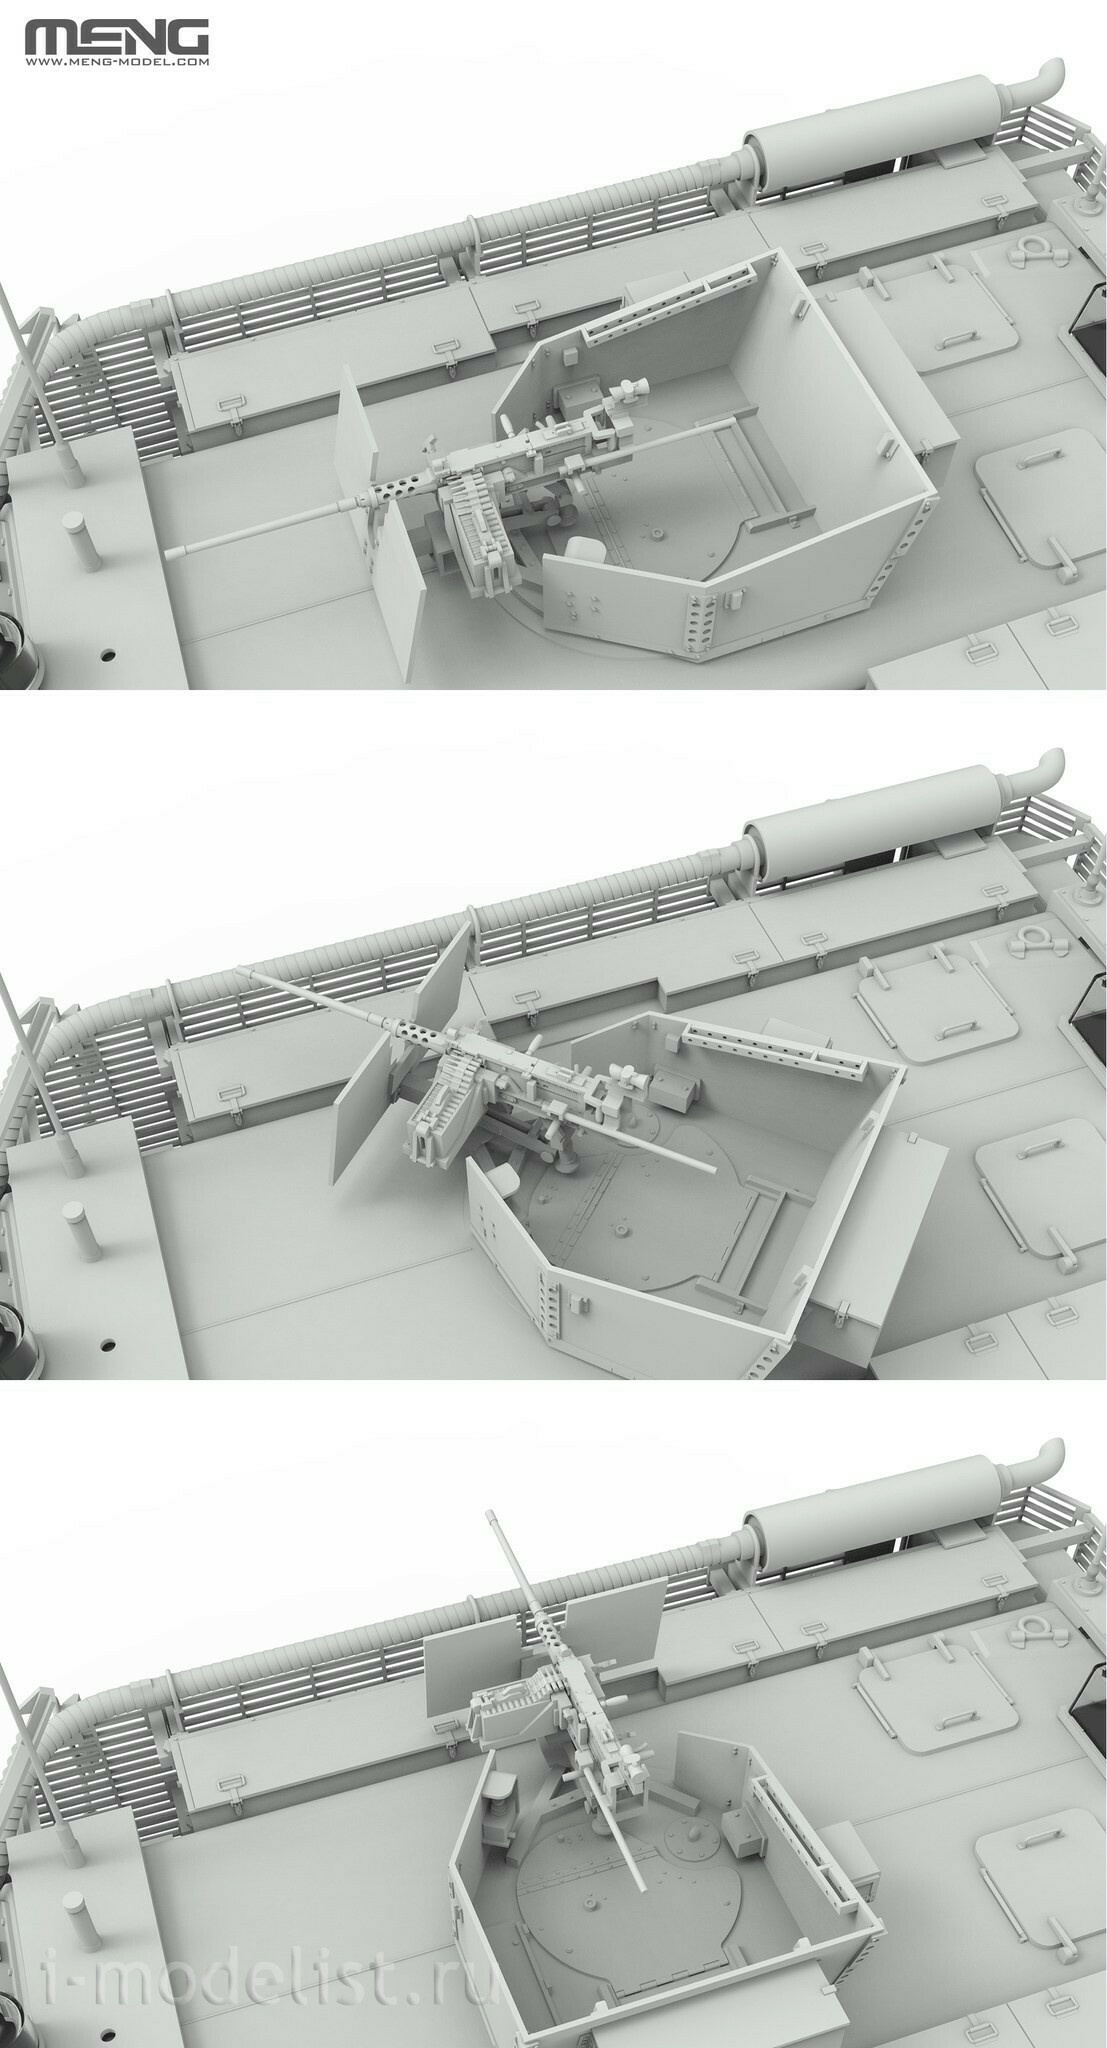 SS-012 Meng 1/35 Британская бронемашина Mastiff 2 6x6